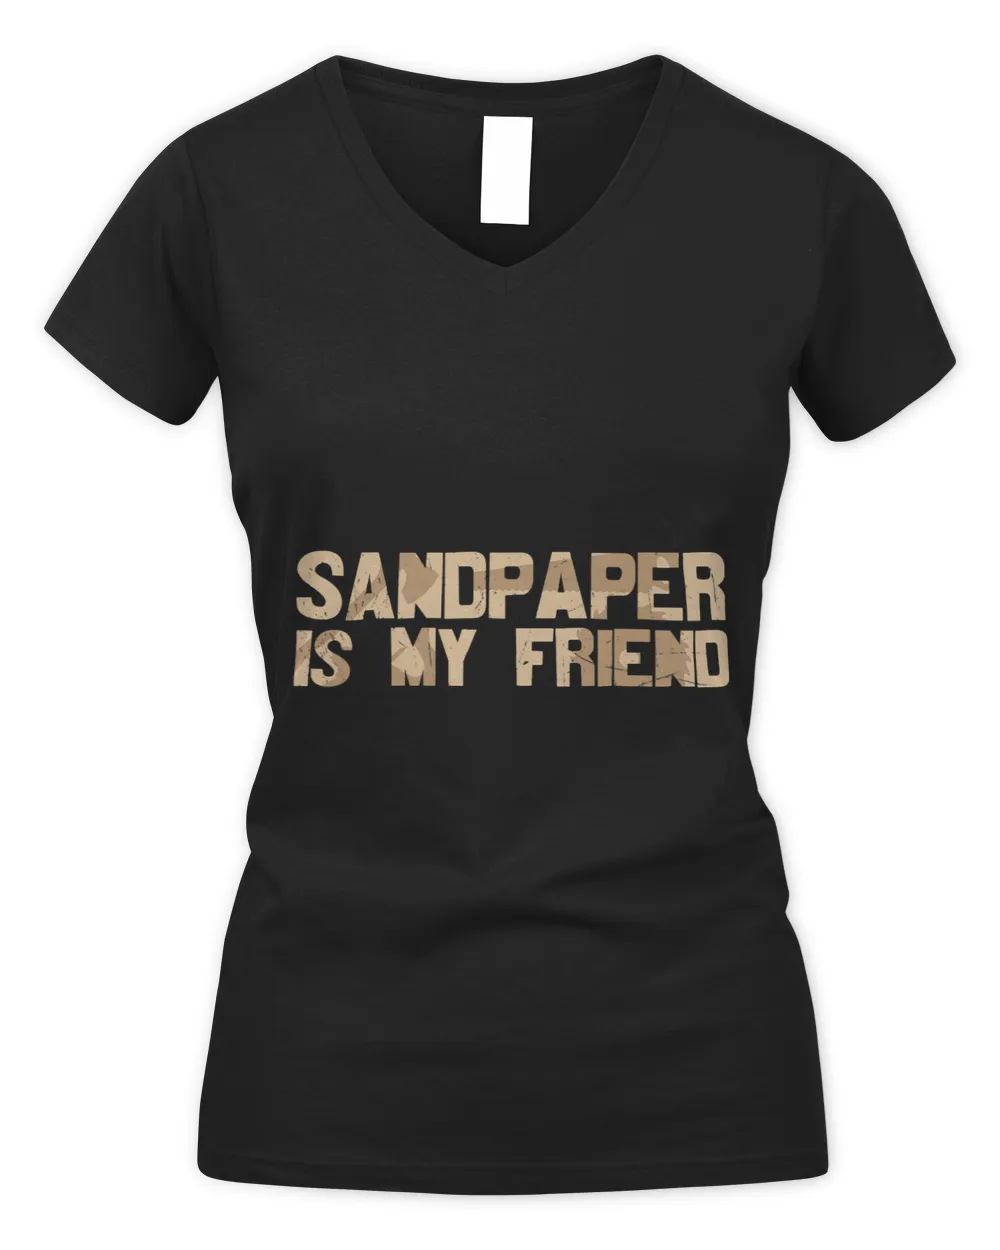 Sandpaper is My Friend Wood Working Workshop Building Men